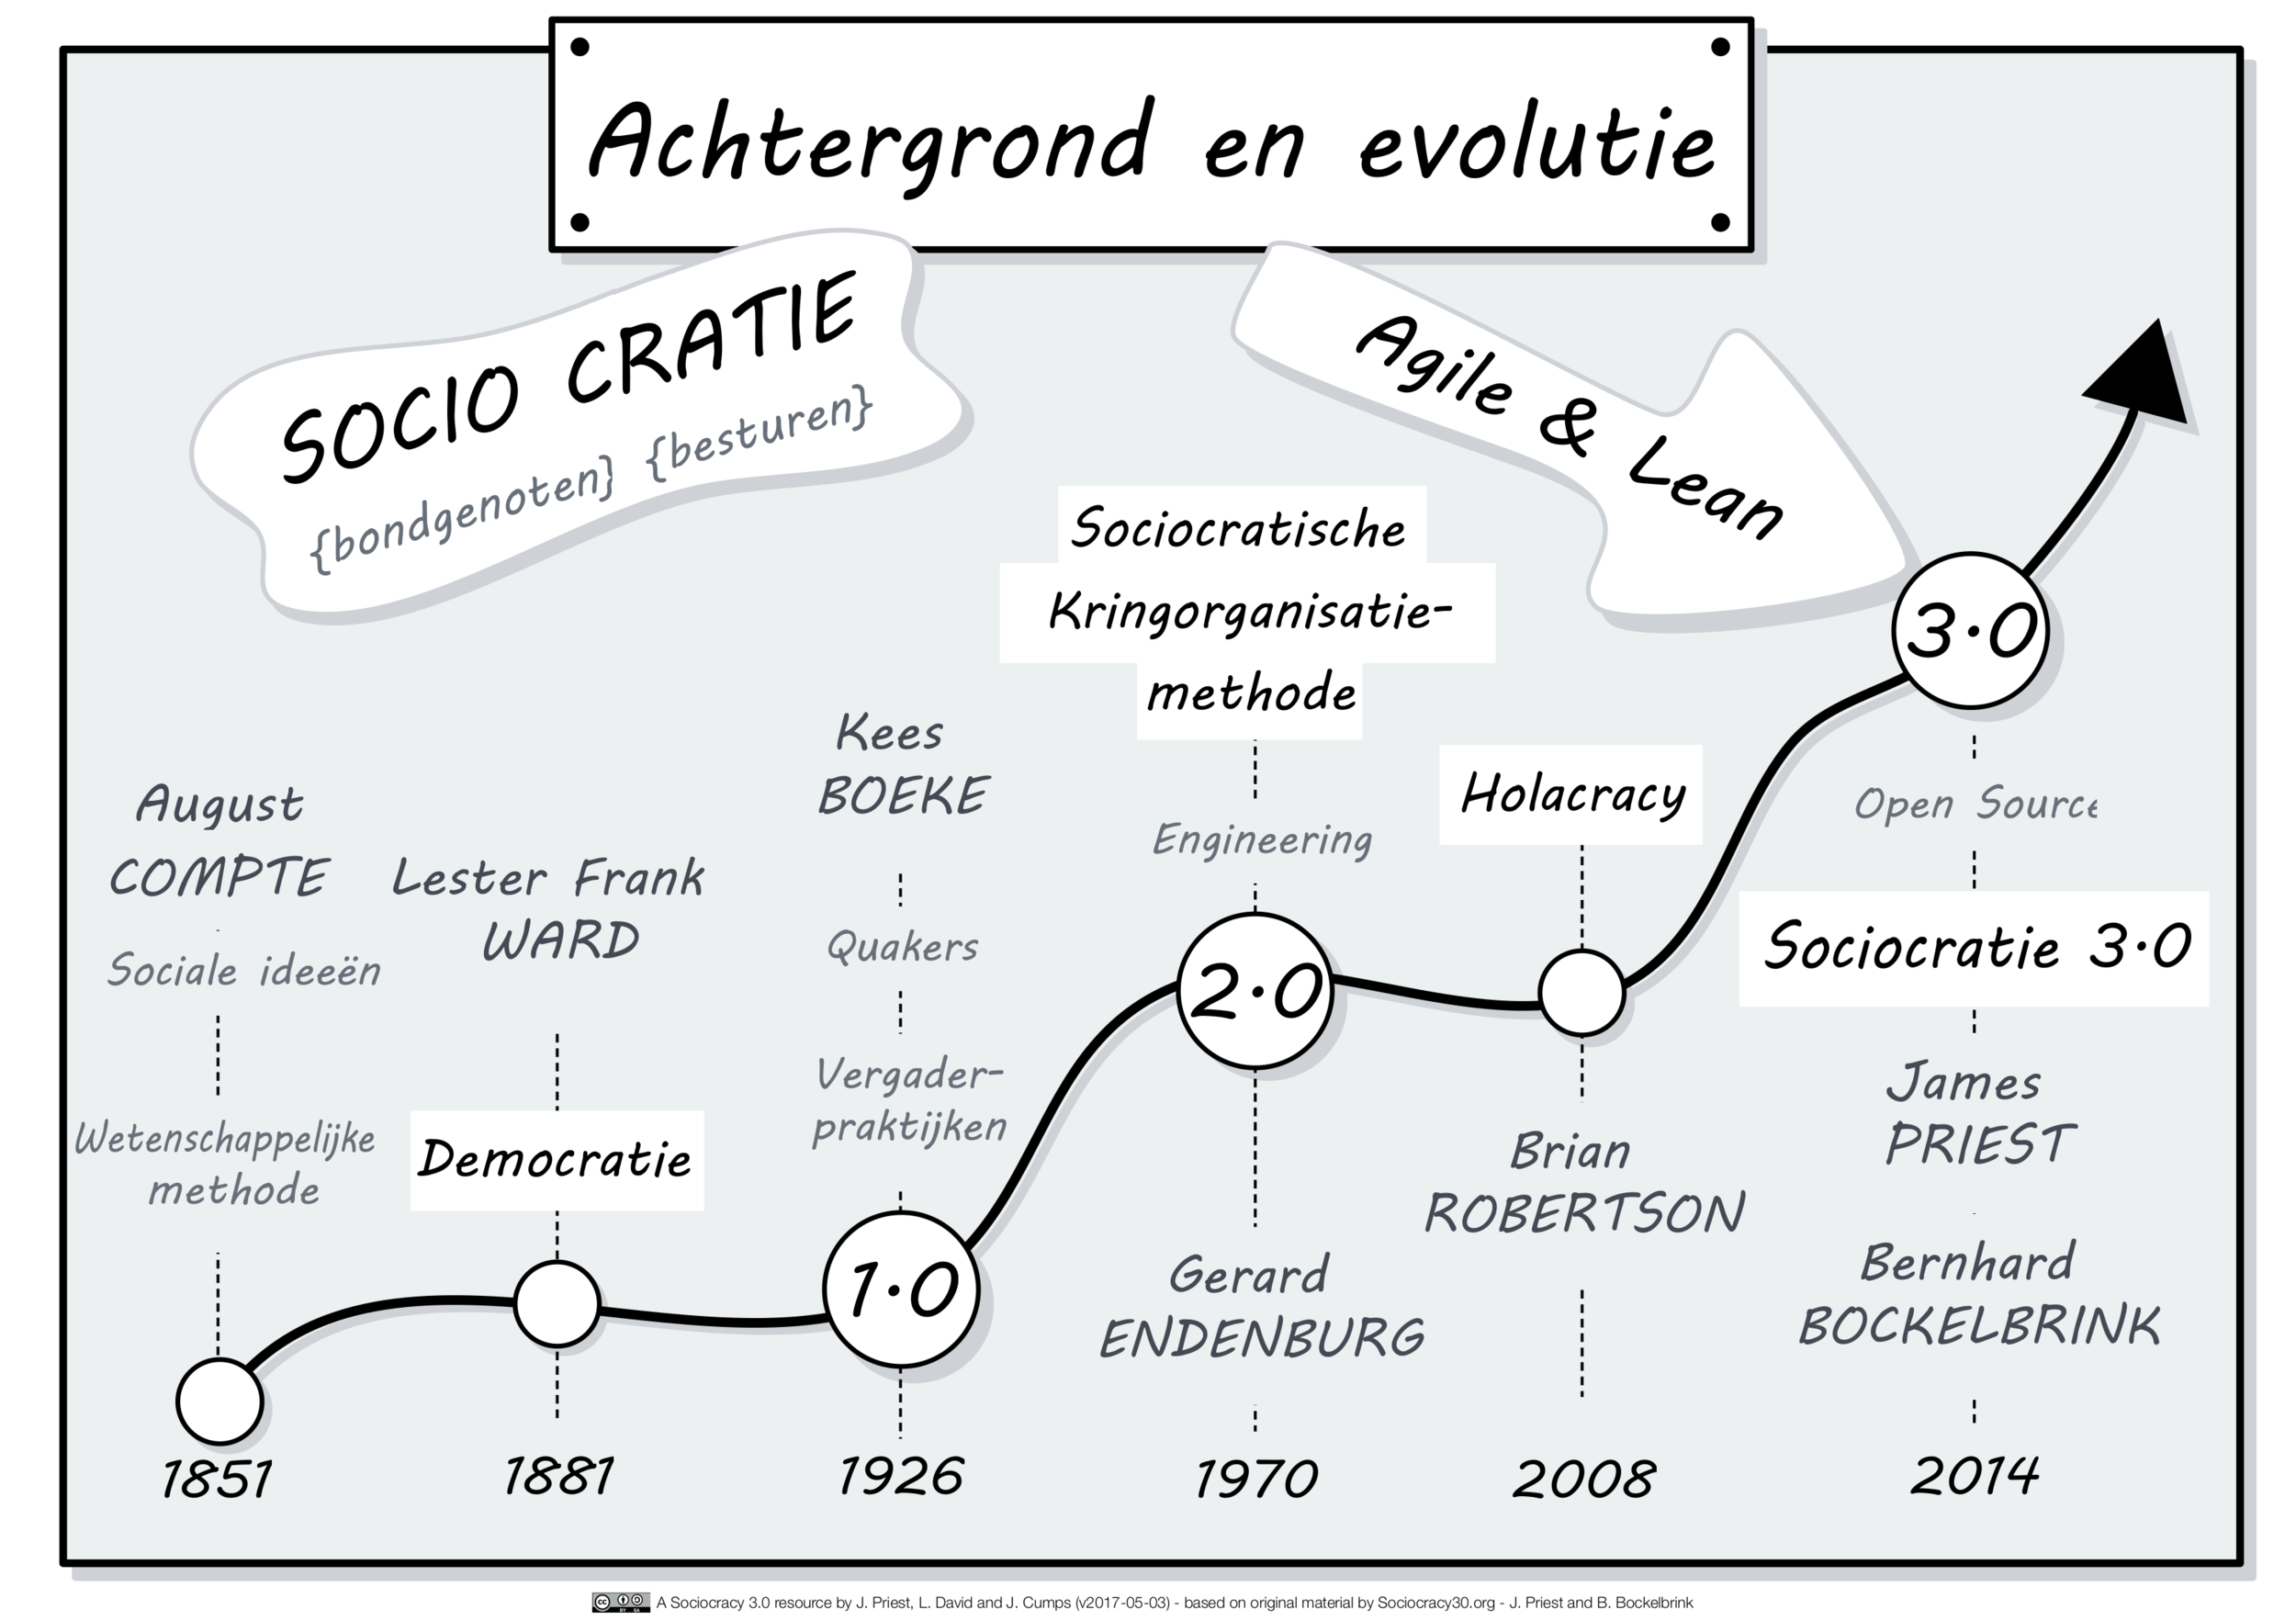 Geschiedenis & Evolutie_NL.png